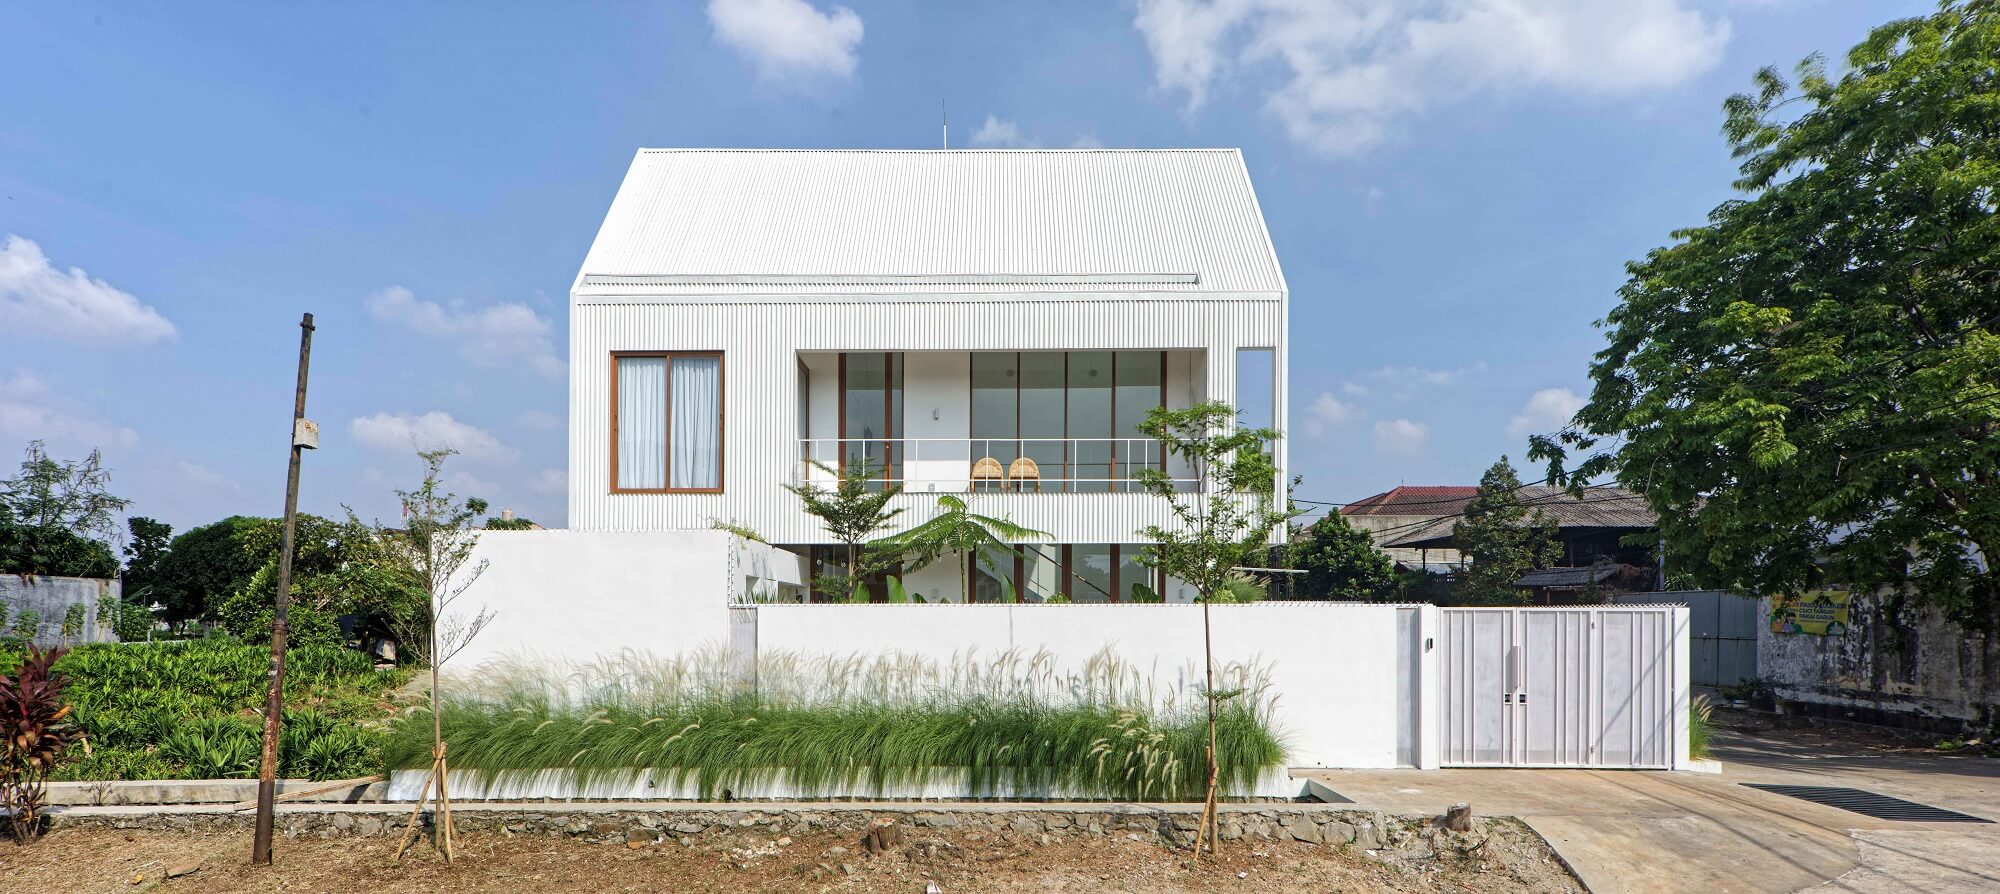 Nagato House - Rasa Architektura